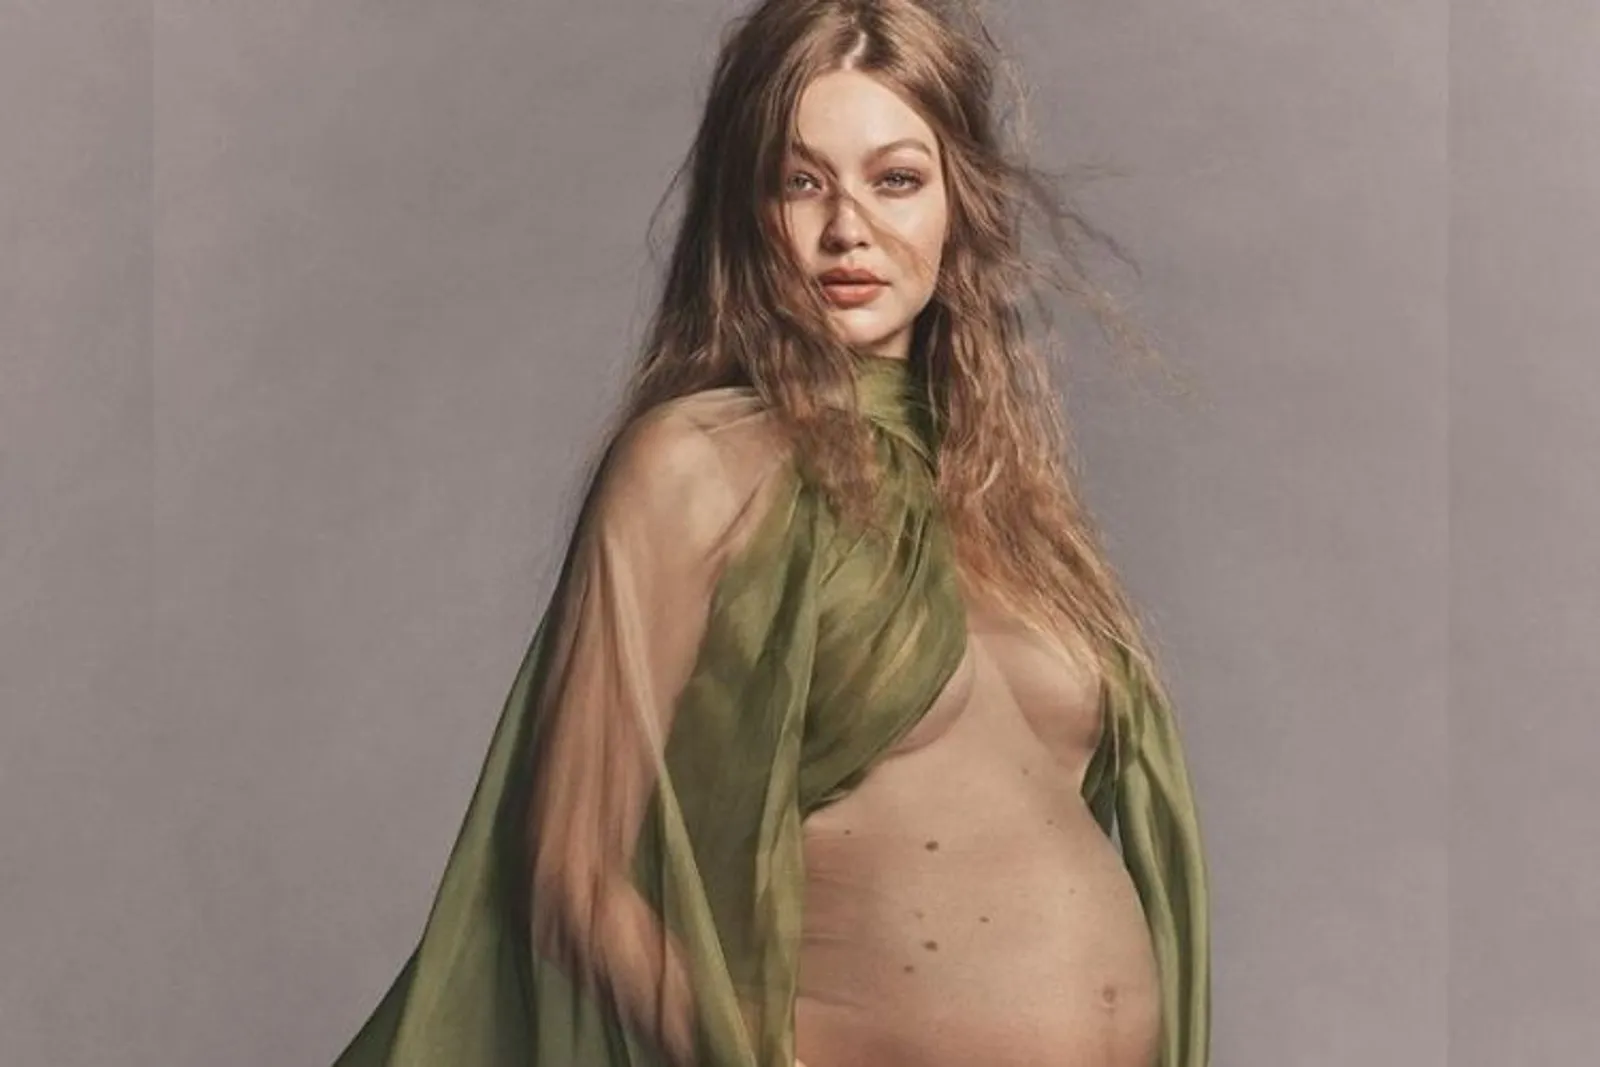 Busana Seksi Para Artis Hollywood saat Pamer Kehamilan